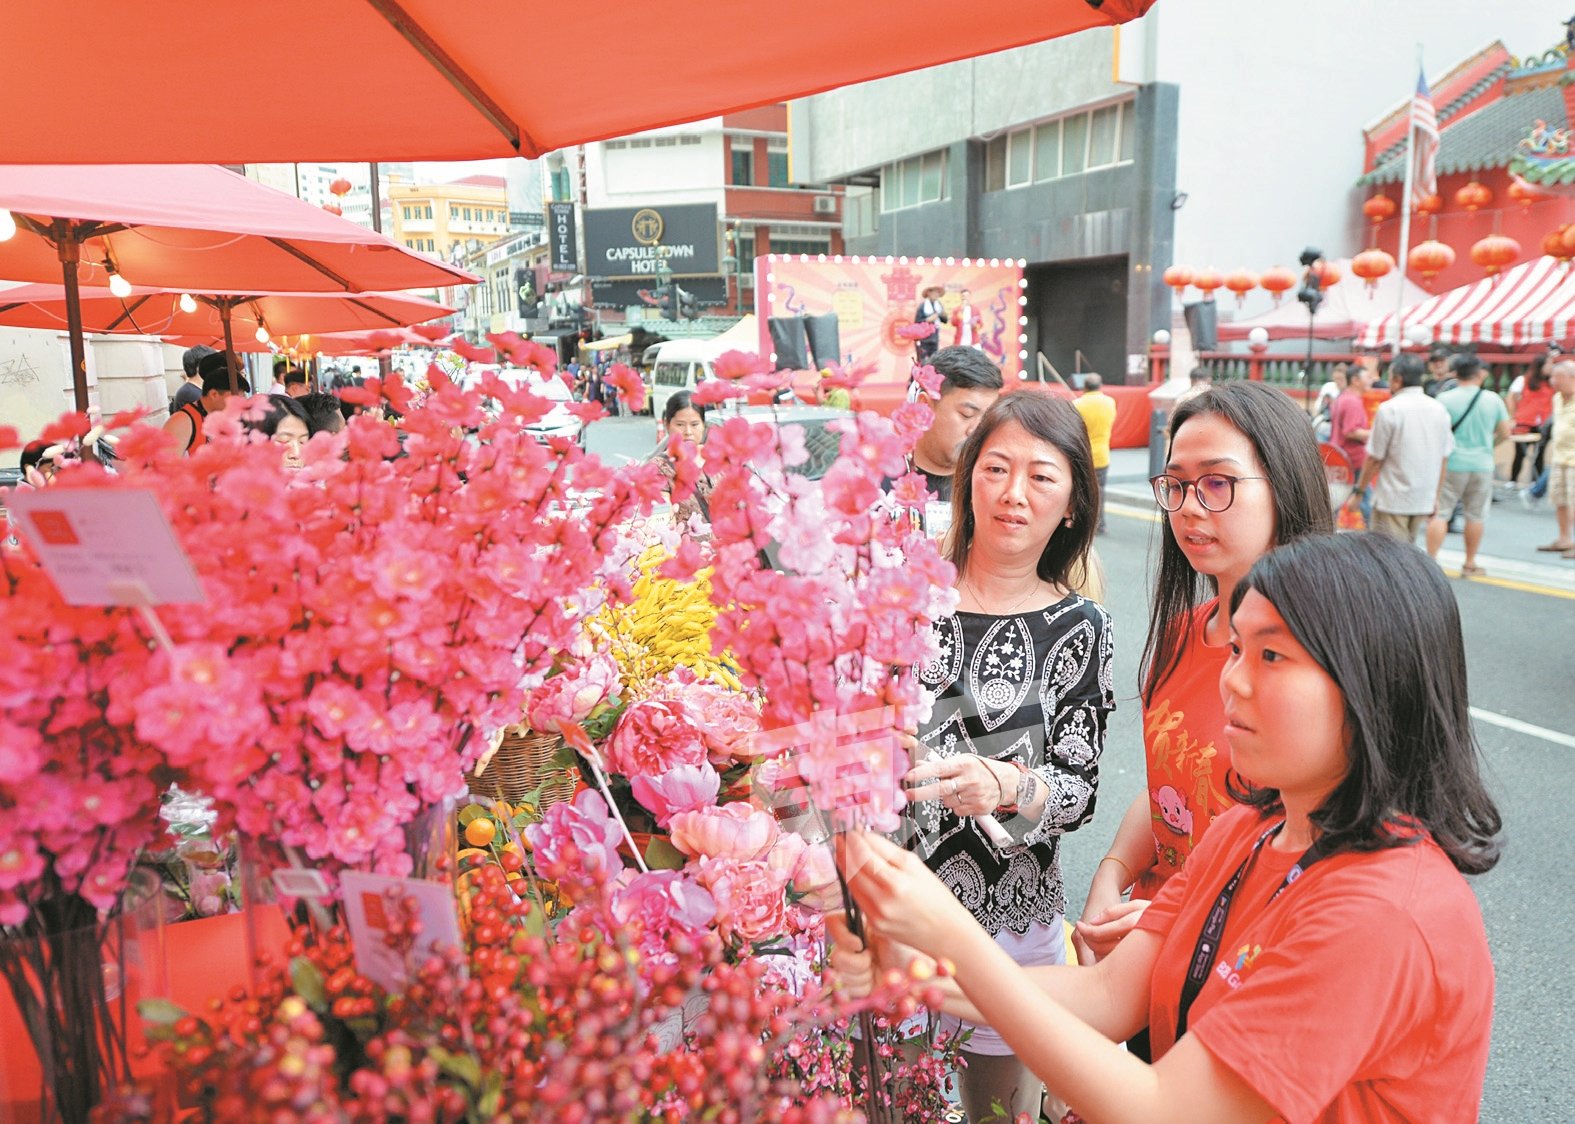 距离农历新年仅剩下约一个星期的时间，许多民众也特别在年味节市集选购梅花，为住家布置一番。